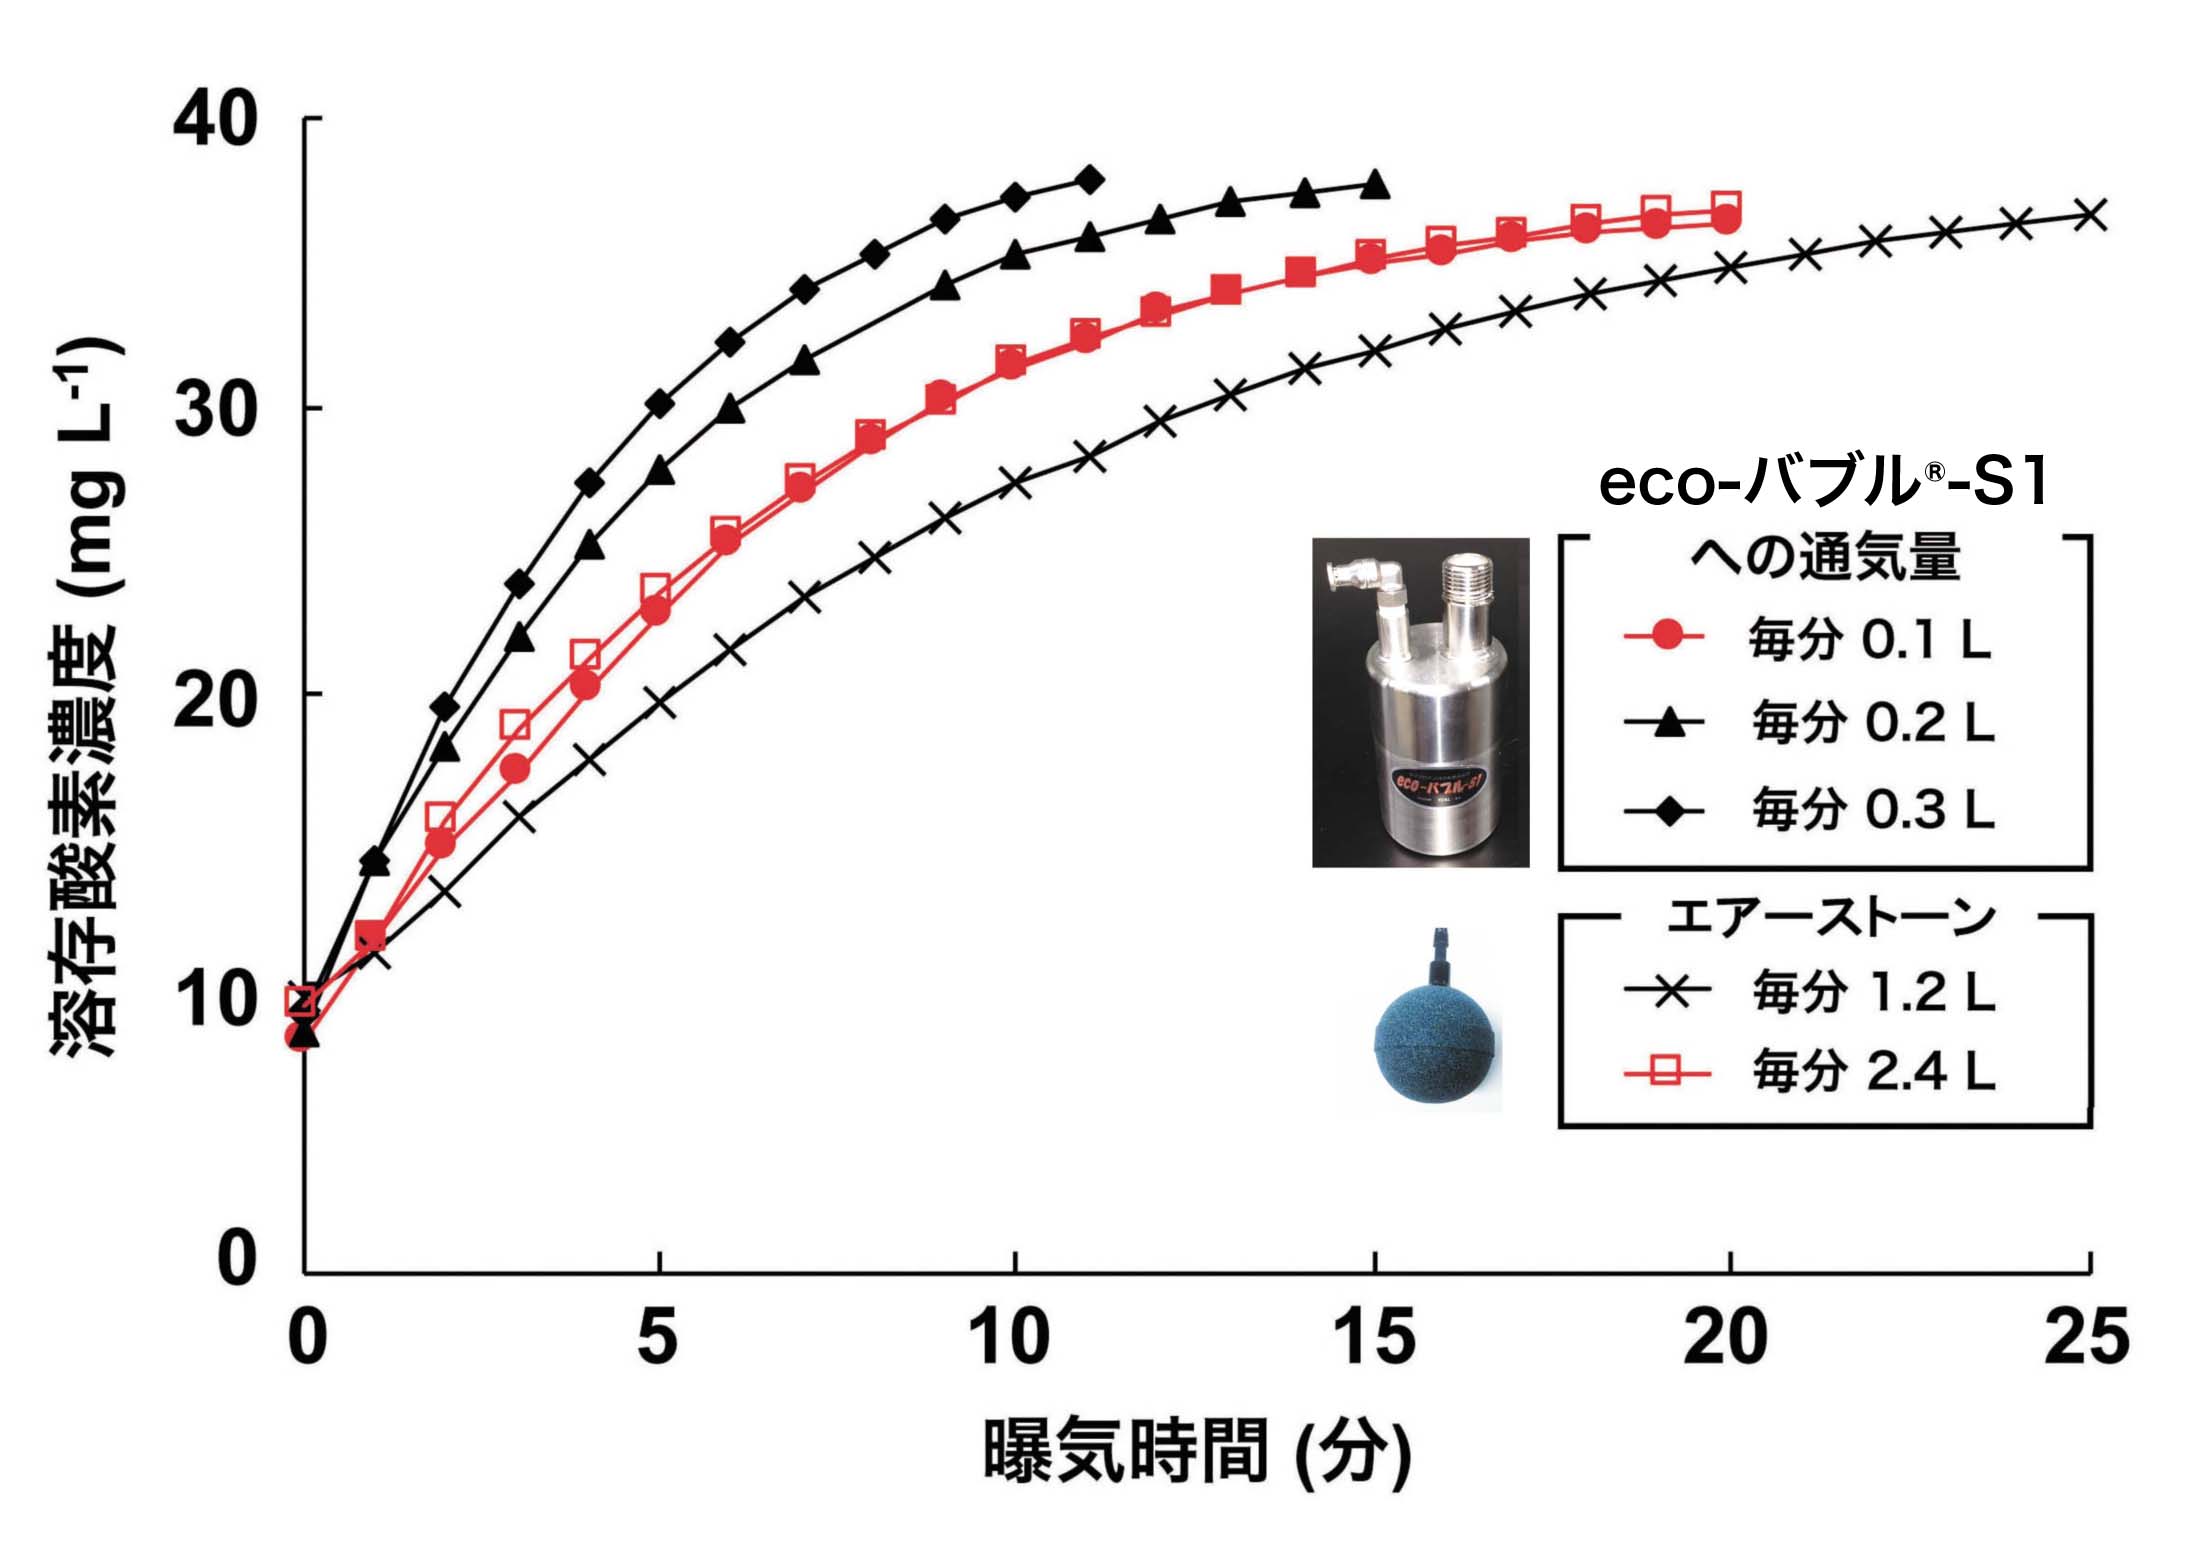 eco-バブル®-S1とエアーストーンを用いた純酸素ガスによる曝気効果の比較